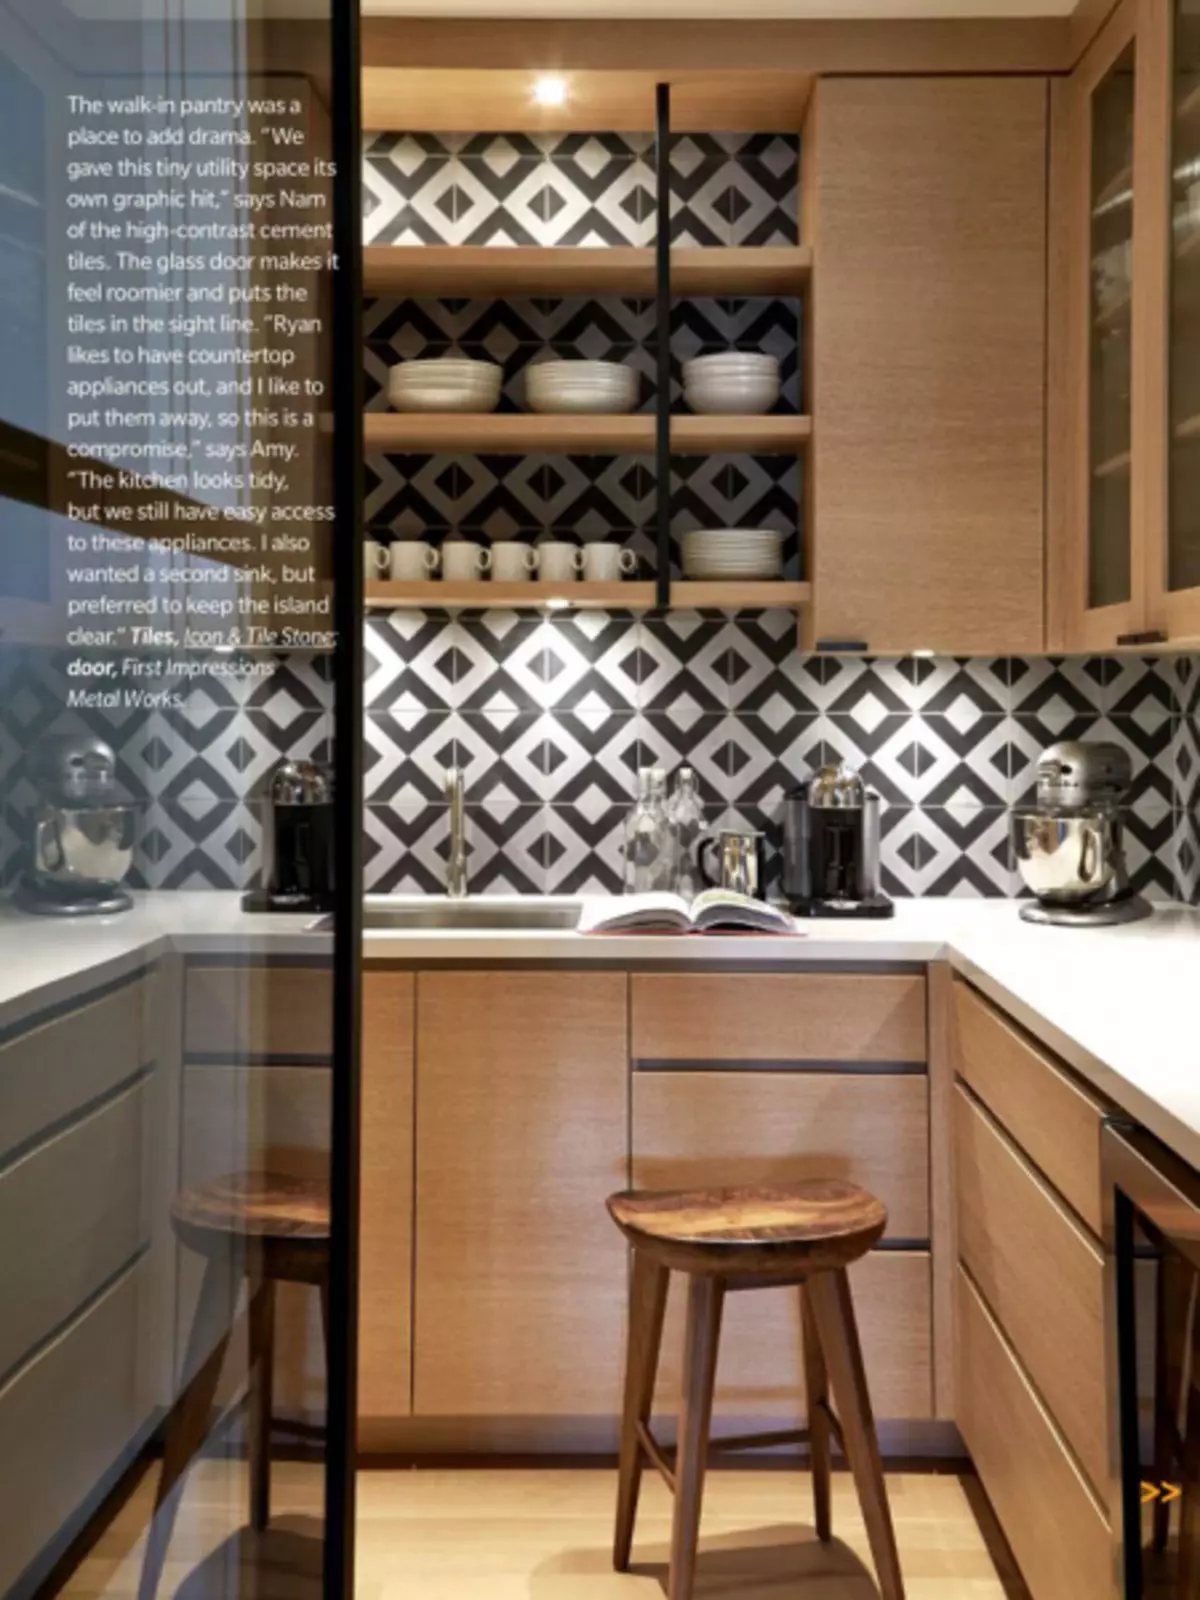 کاشی زیبا با الگوهای هندسی برای پیش بند آشپزخانه